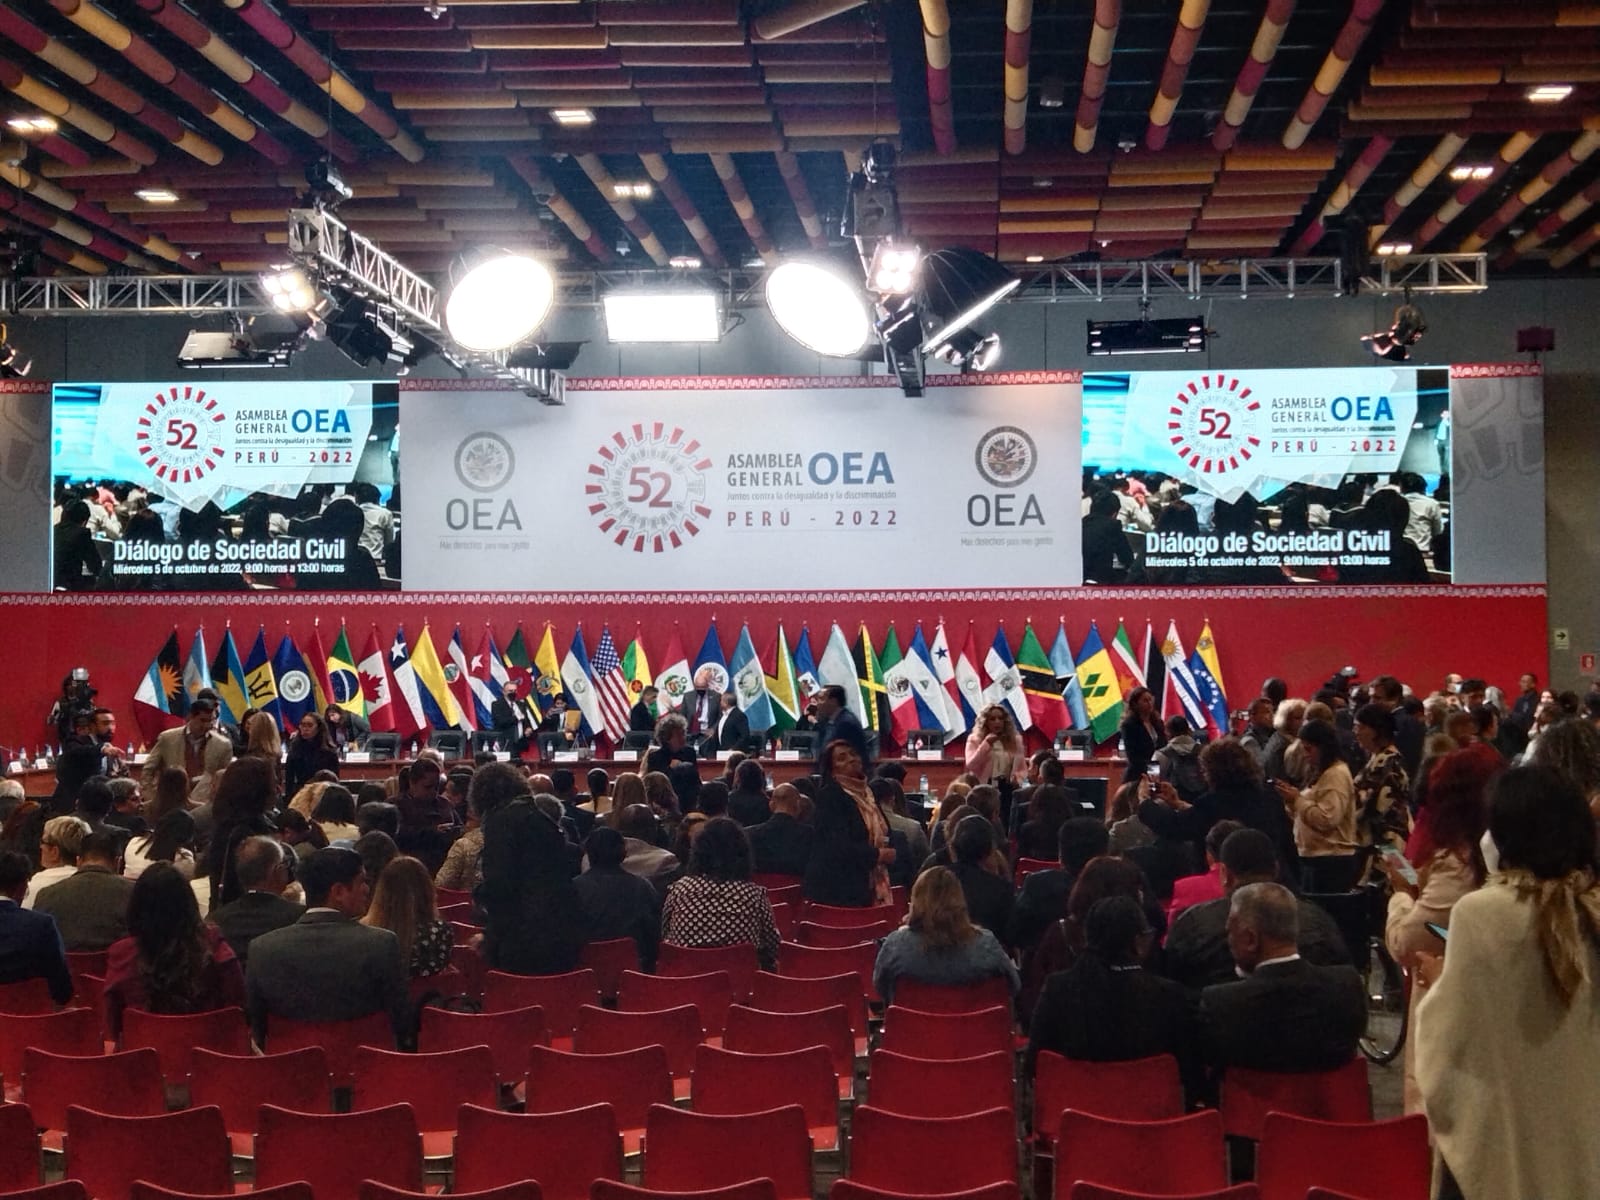 EN VIVO Asamblea OEA 2022: Se inicia evento internacional en Lima